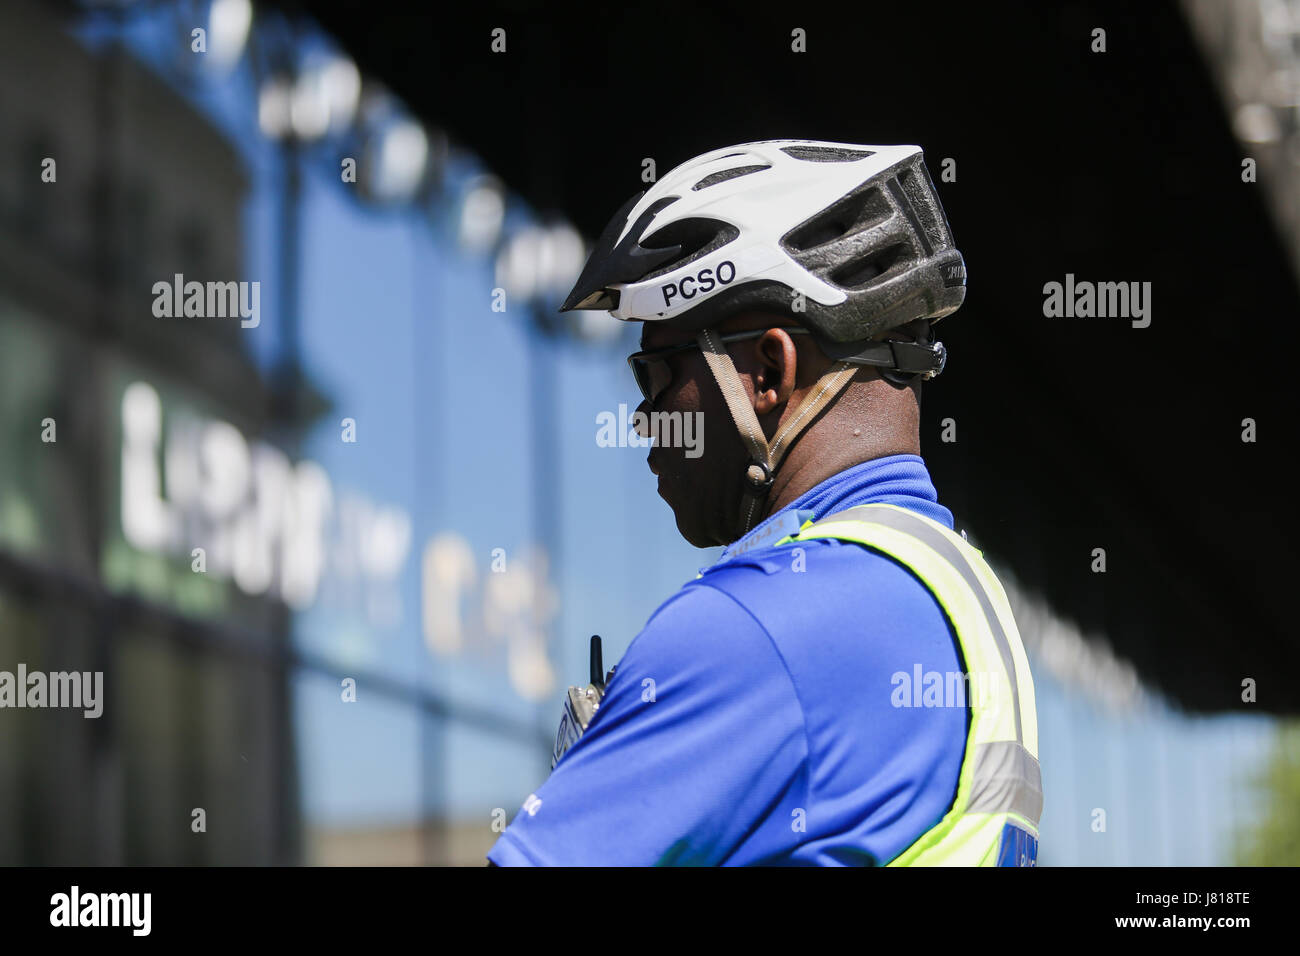 Polizia PCSO support officer indossando il casco del ciclo di servizio Foto Stock